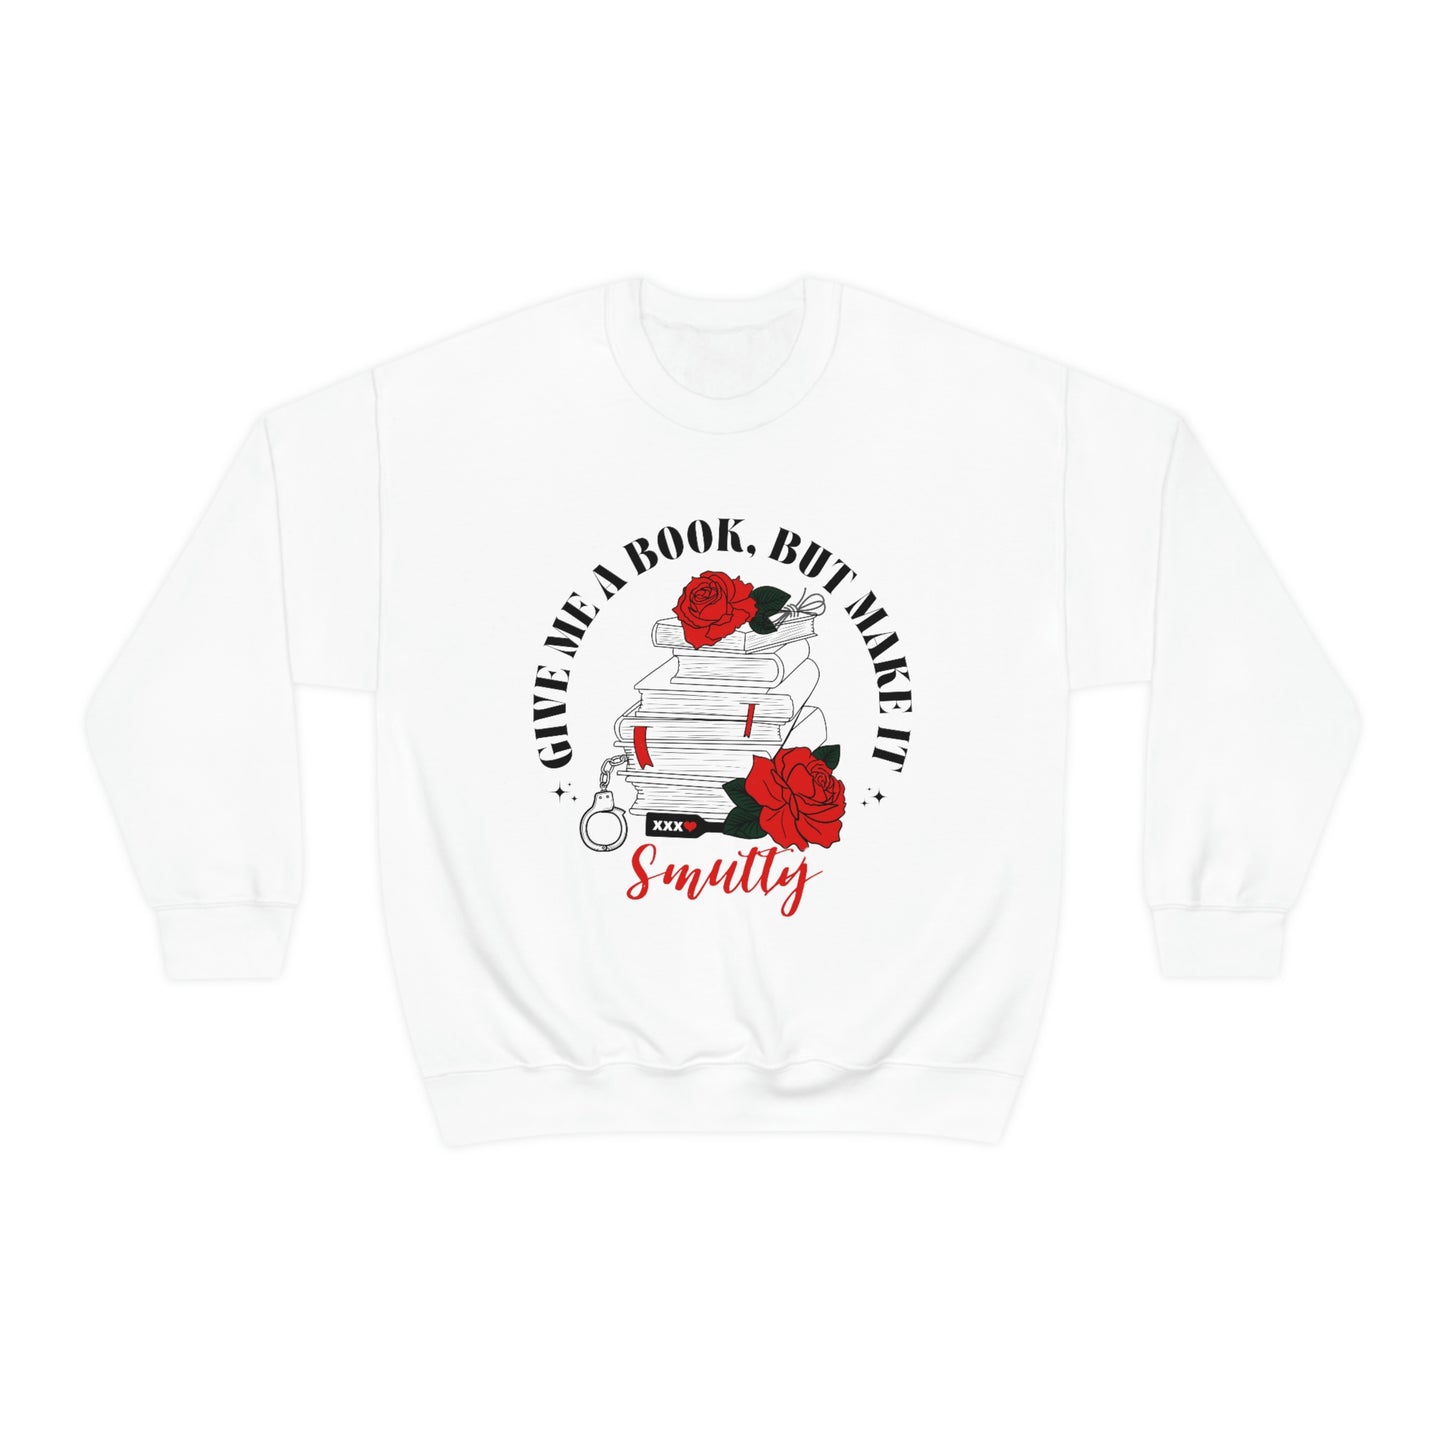 Make it smutty Crewneck Sweatshirt